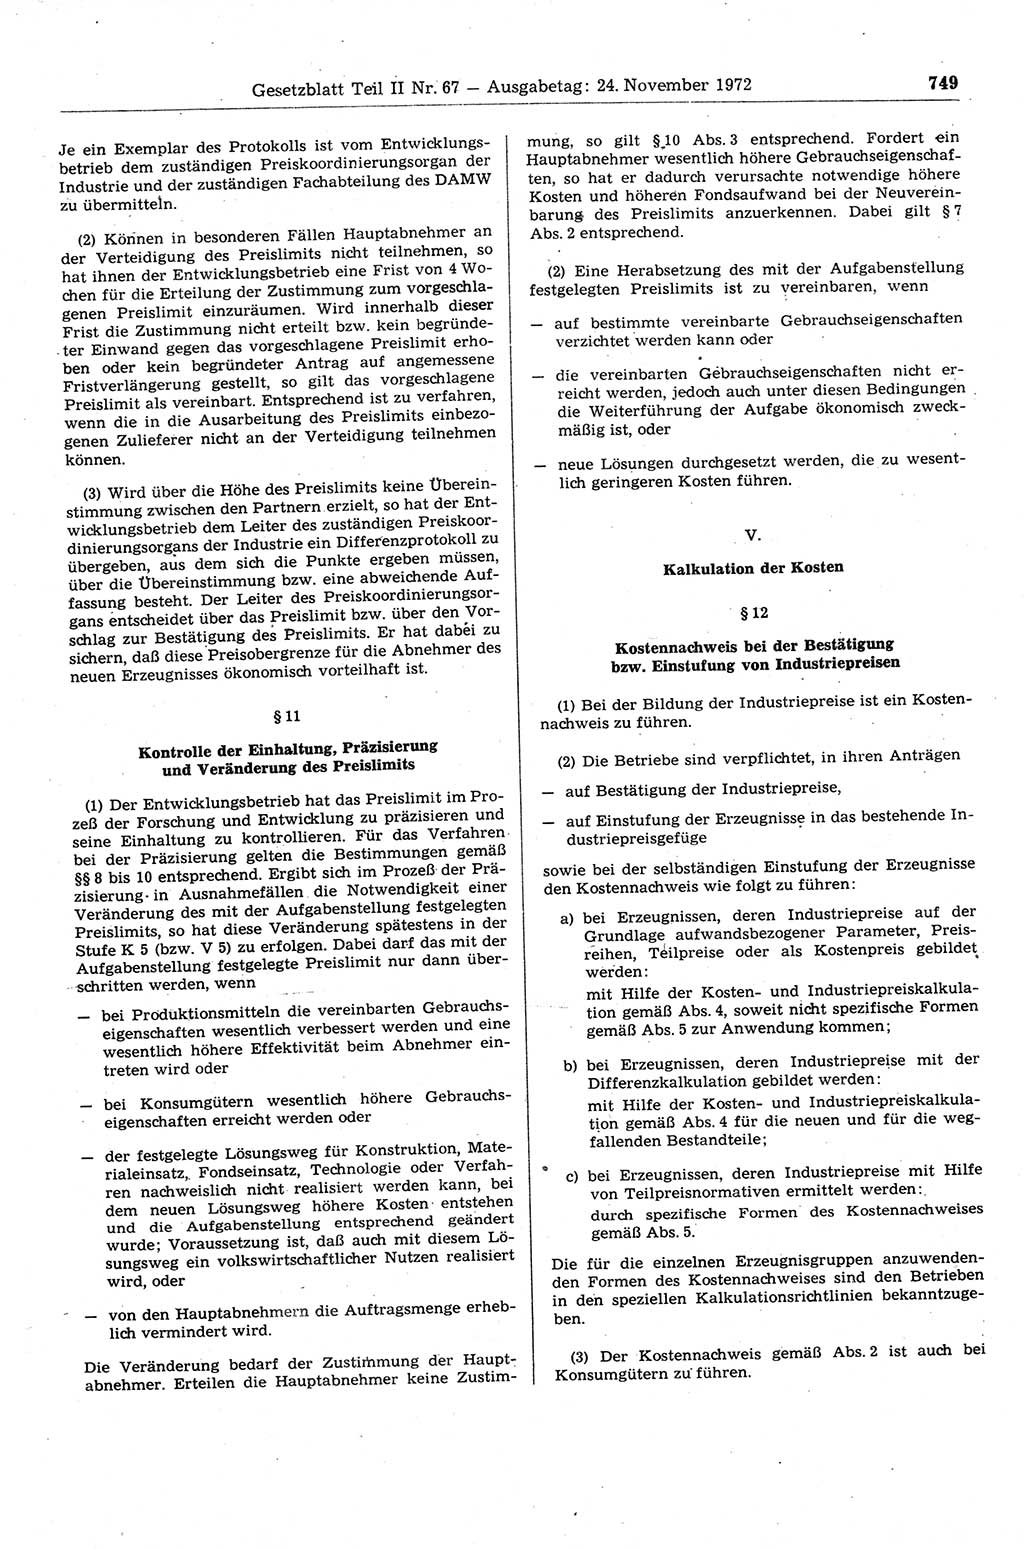 Gesetzblatt (GBl.) der Deutschen Demokratischen Republik (DDR) Teil ⅠⅠ 1972, Seite 749 (GBl. DDR ⅠⅠ 1972, S. 749)